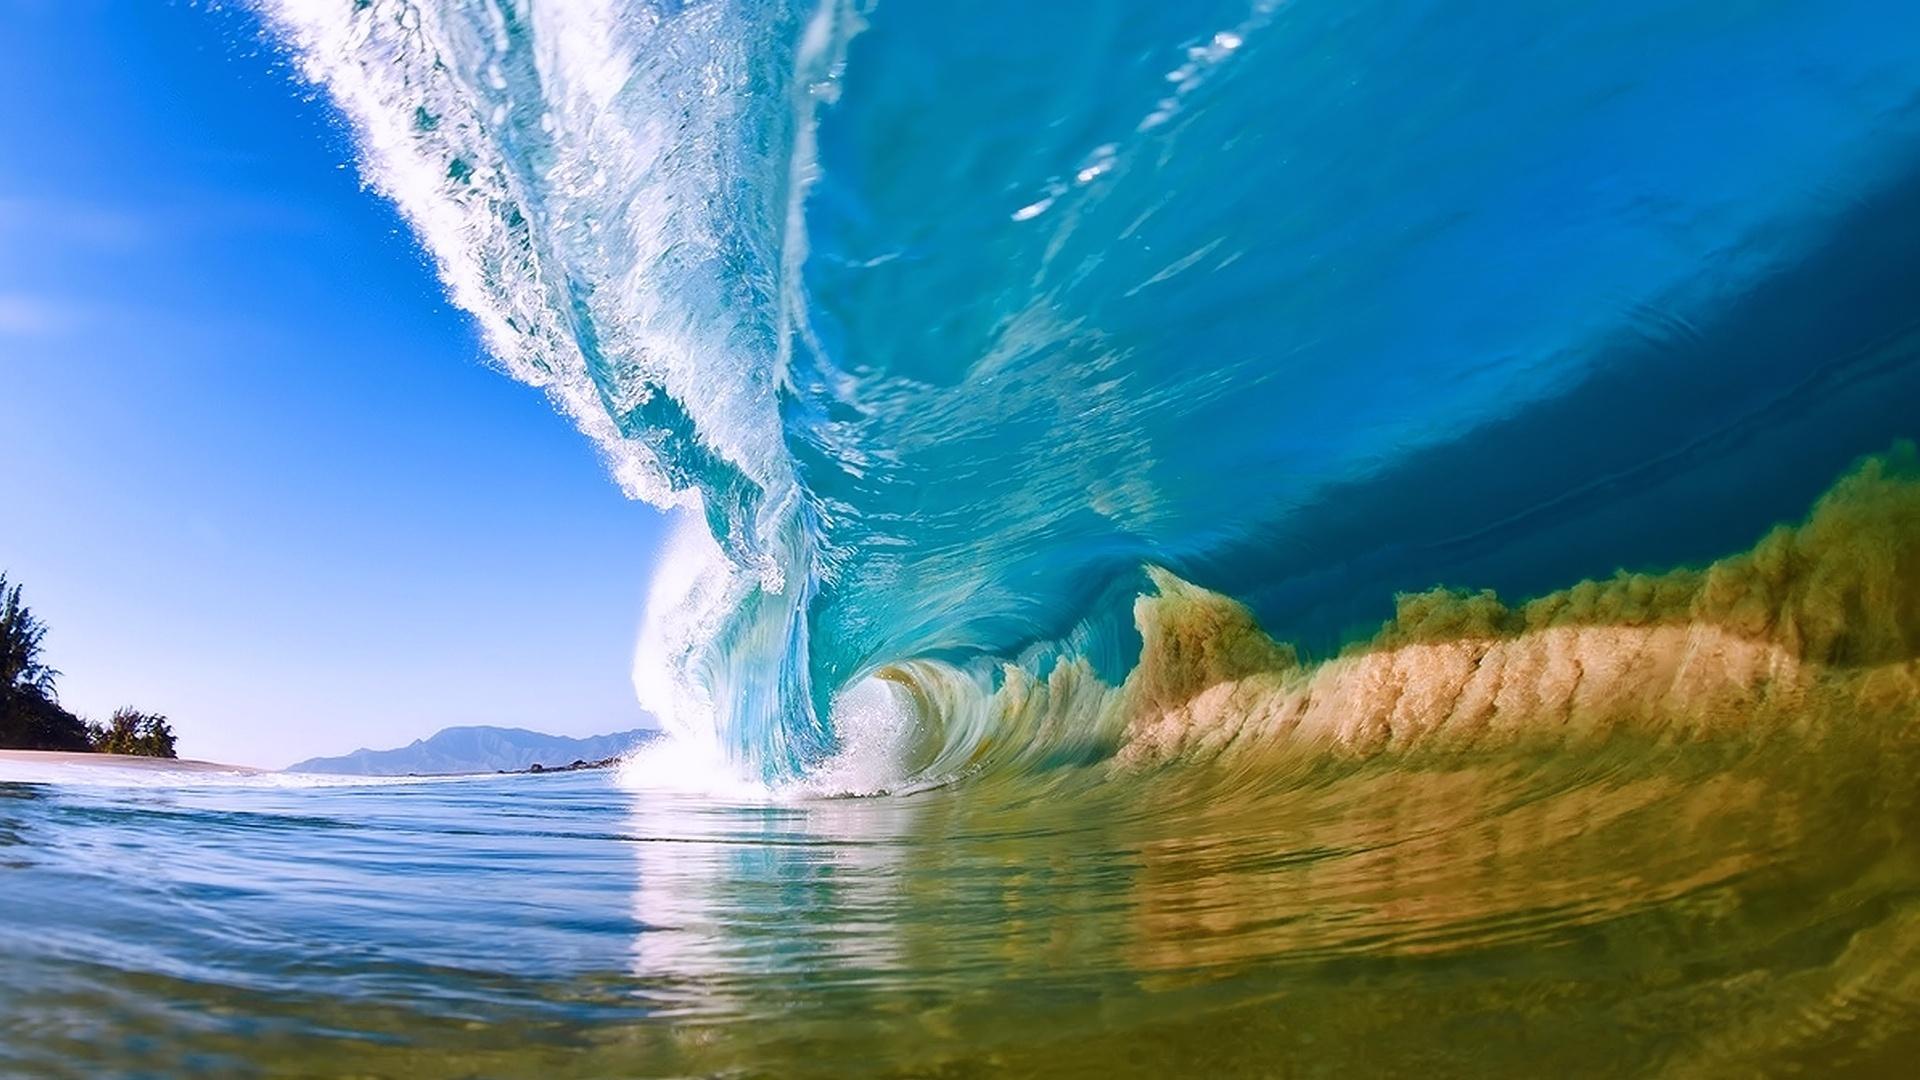 Download 1920x1080 Summer Ocean Wave Wallpaper